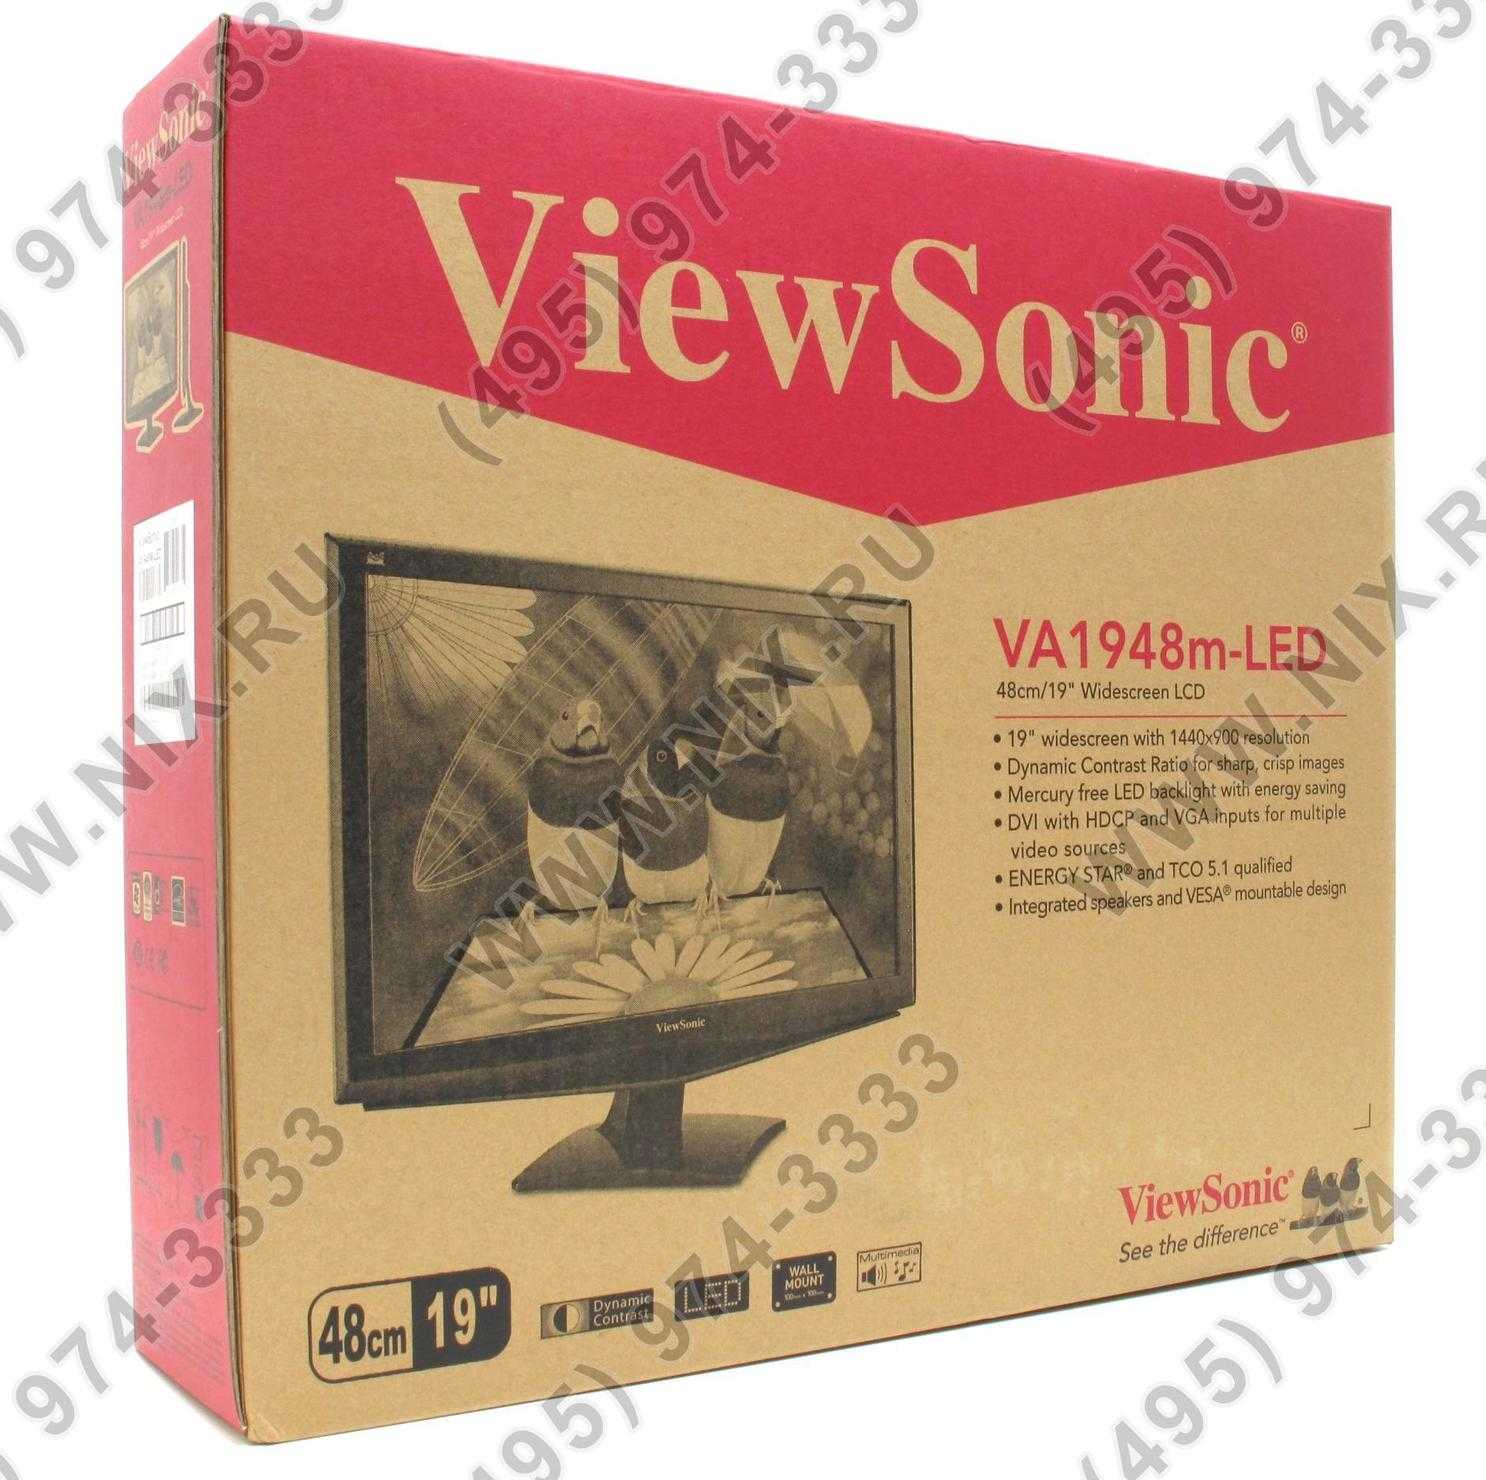 Viewsonic va1948m-led купить по акционной цене , отзывы и обзоры.